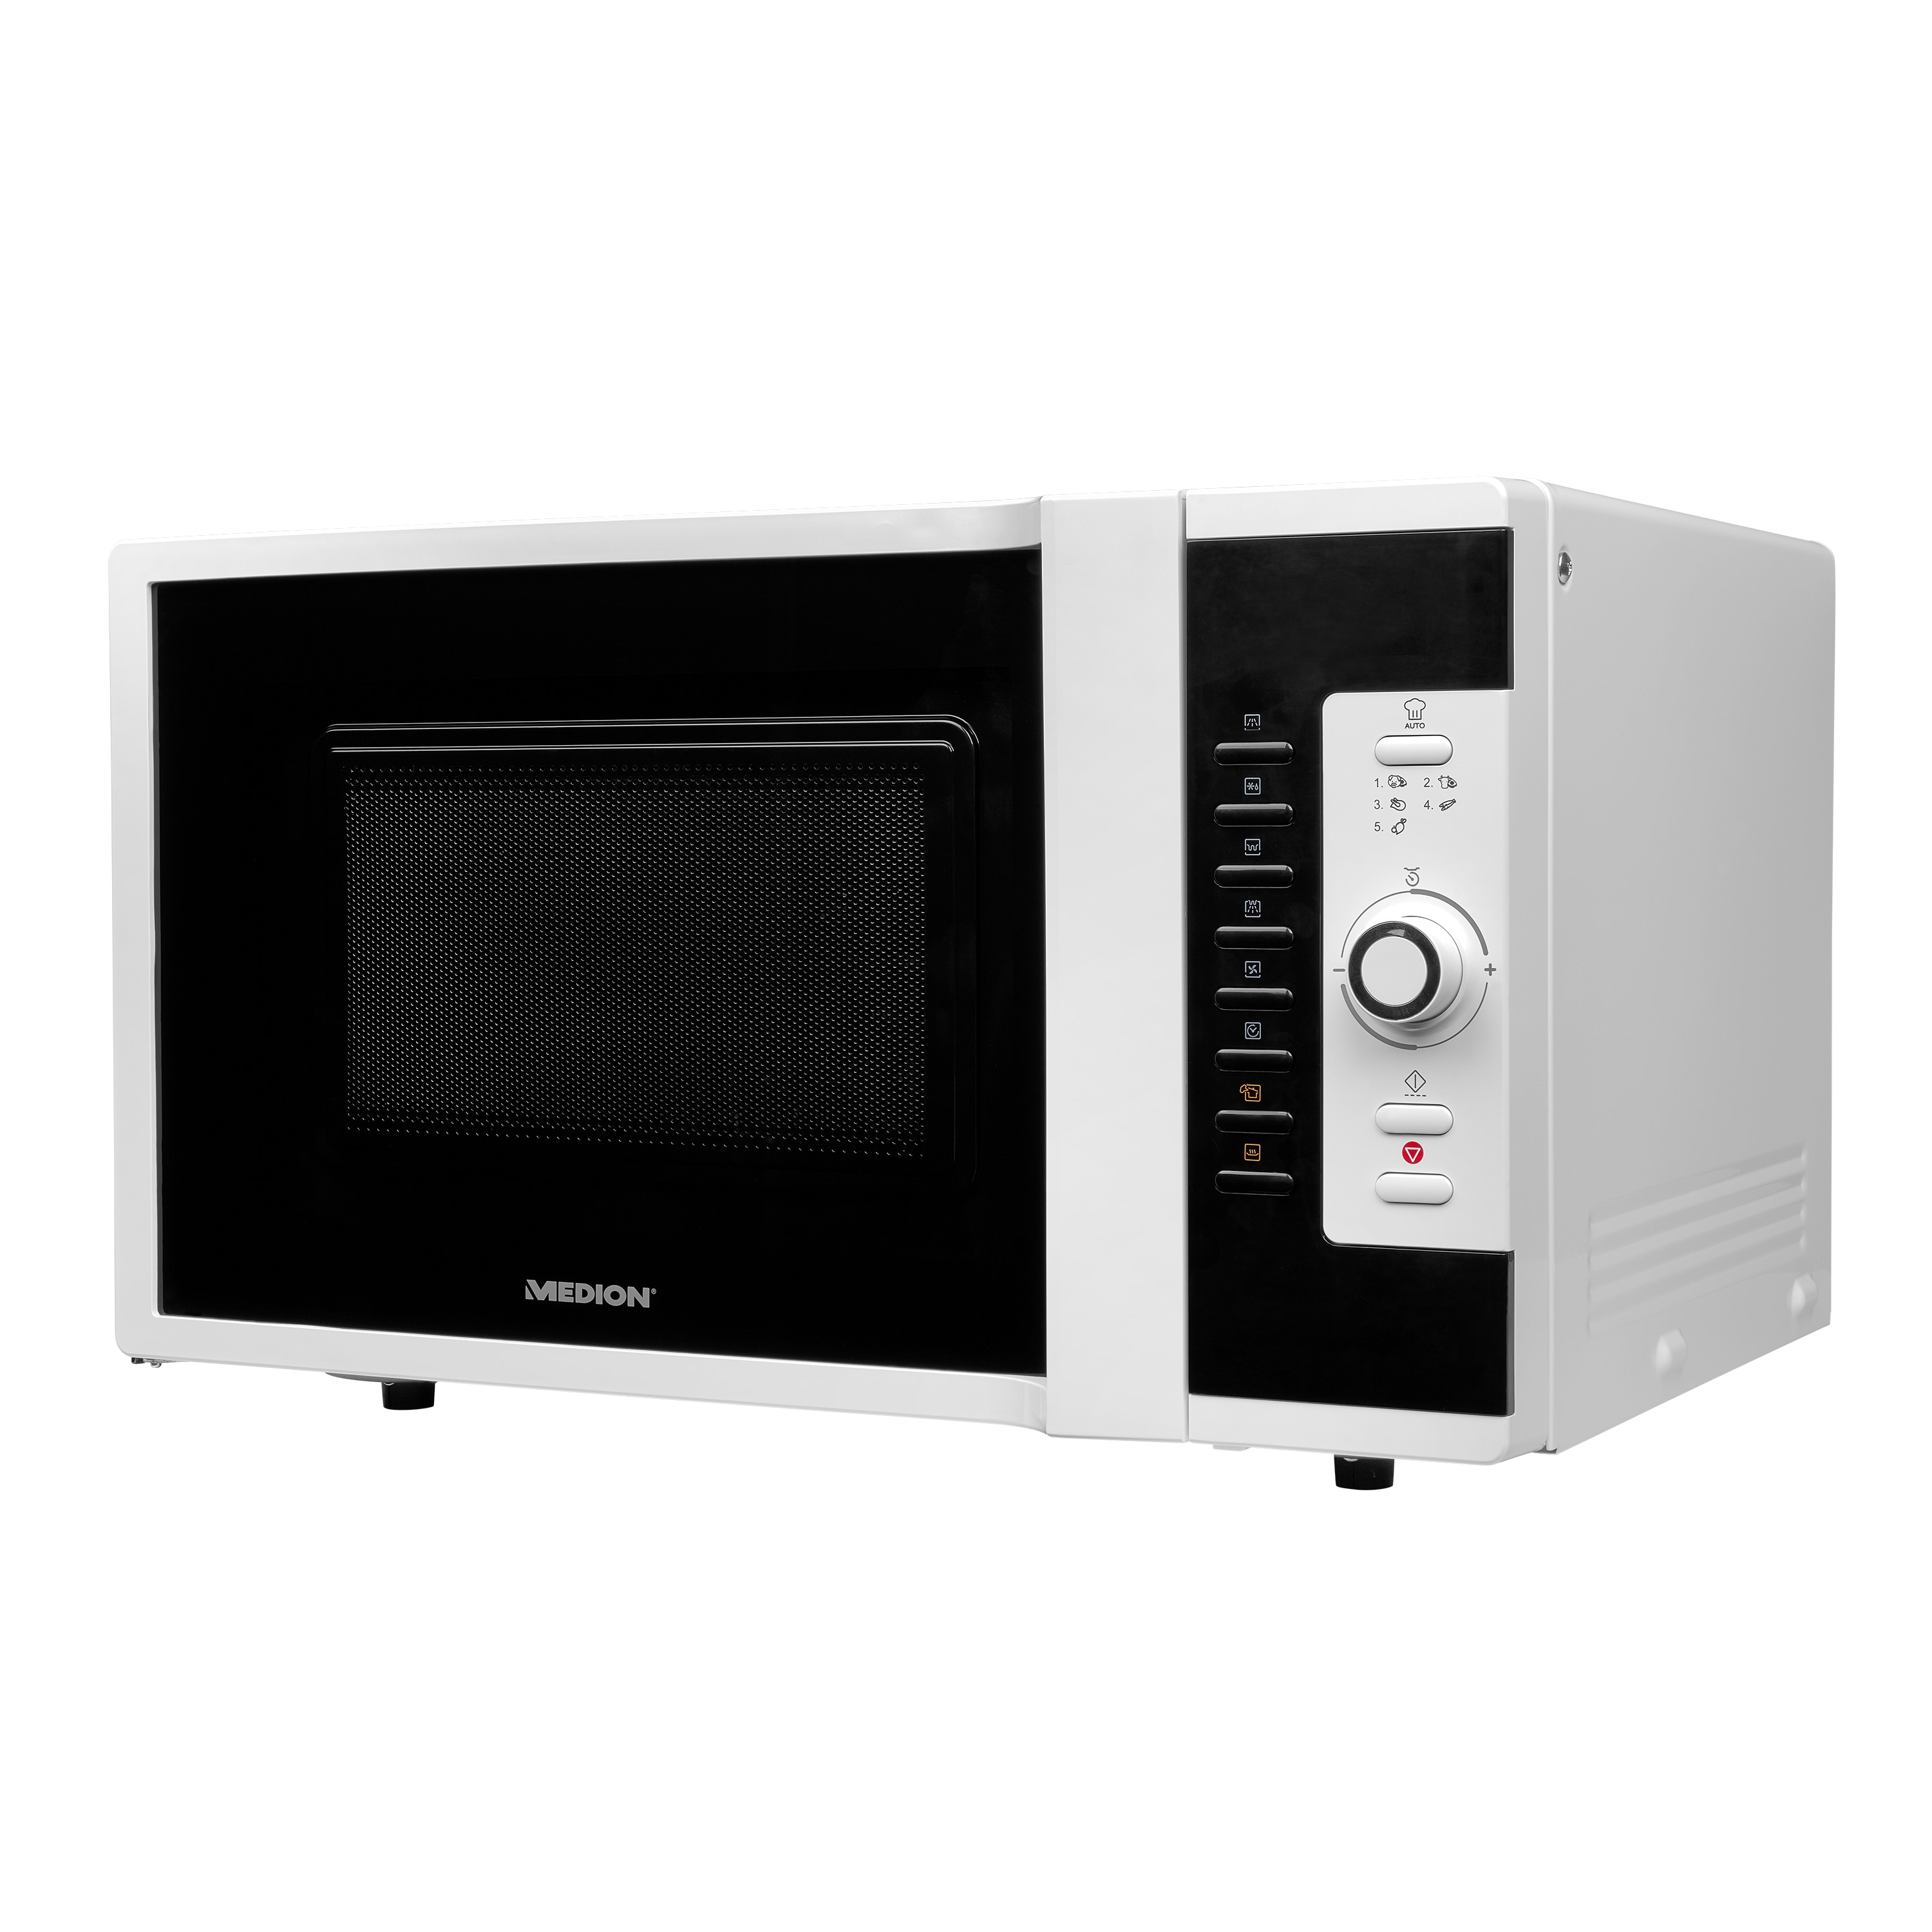 MEDION® 3in1 Mikrowelle MD 18502, Kombination aus Mikrowelle, Ofen und Grill, 5 Automatikprogramme, 28 L Garinnenraum, weiß